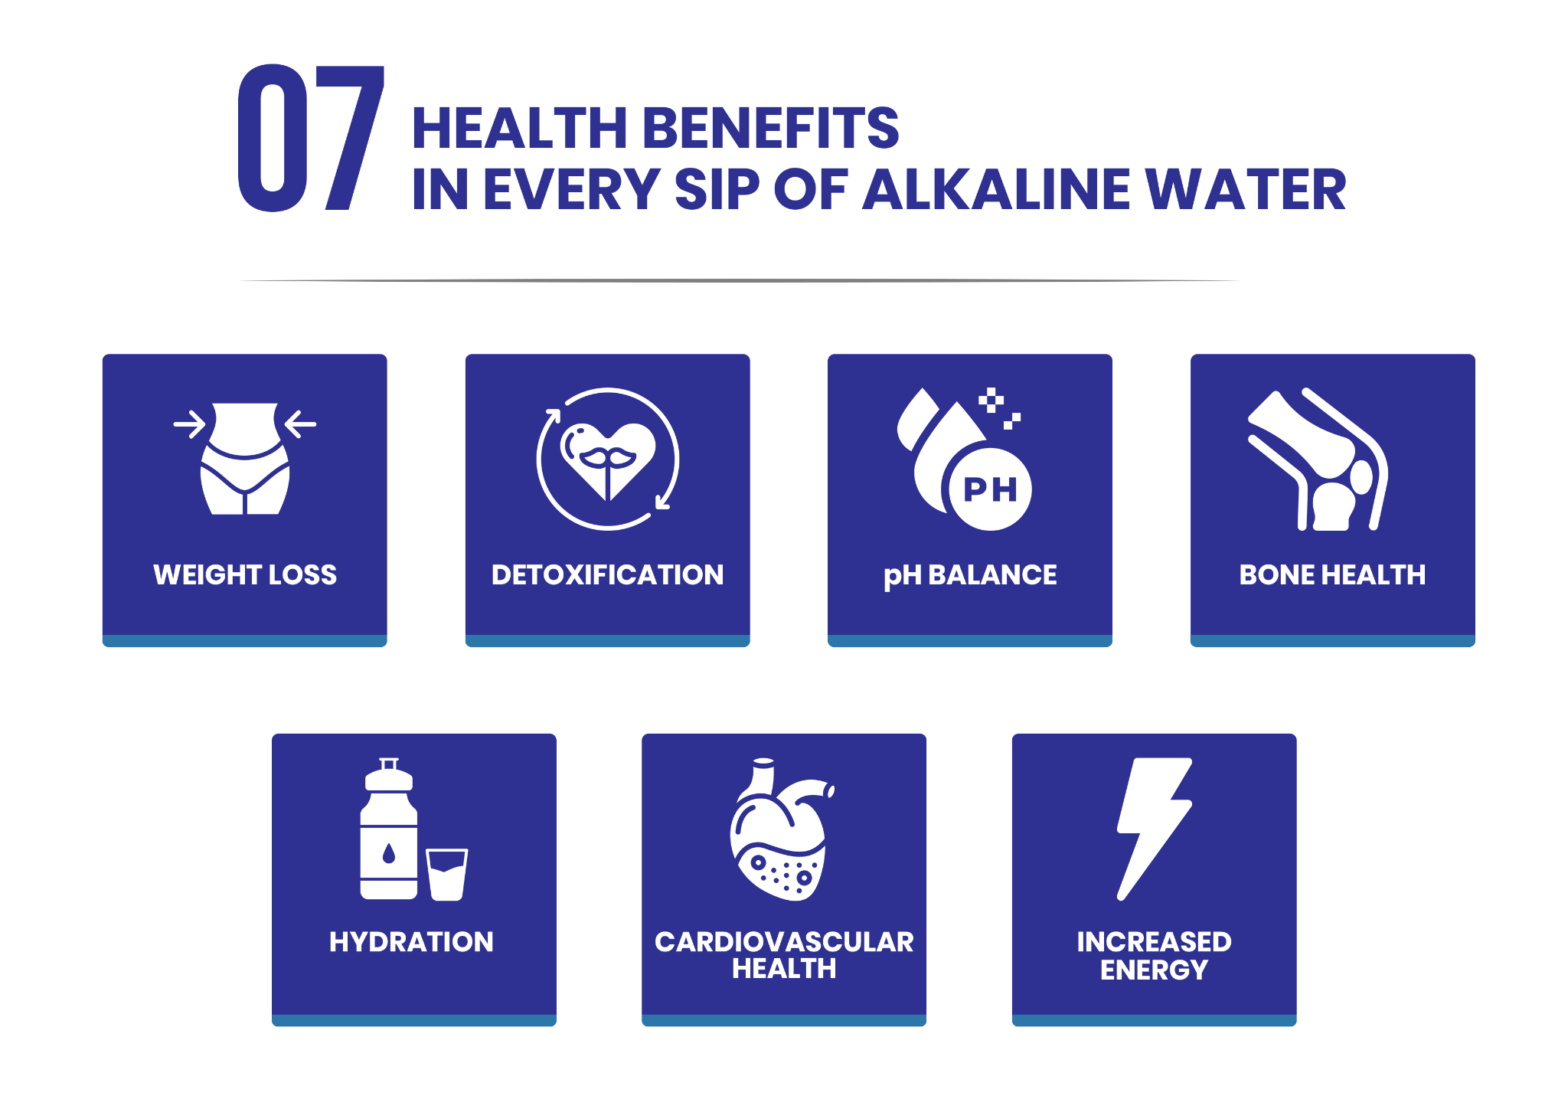 7 health benefits in every sip of alkaline water